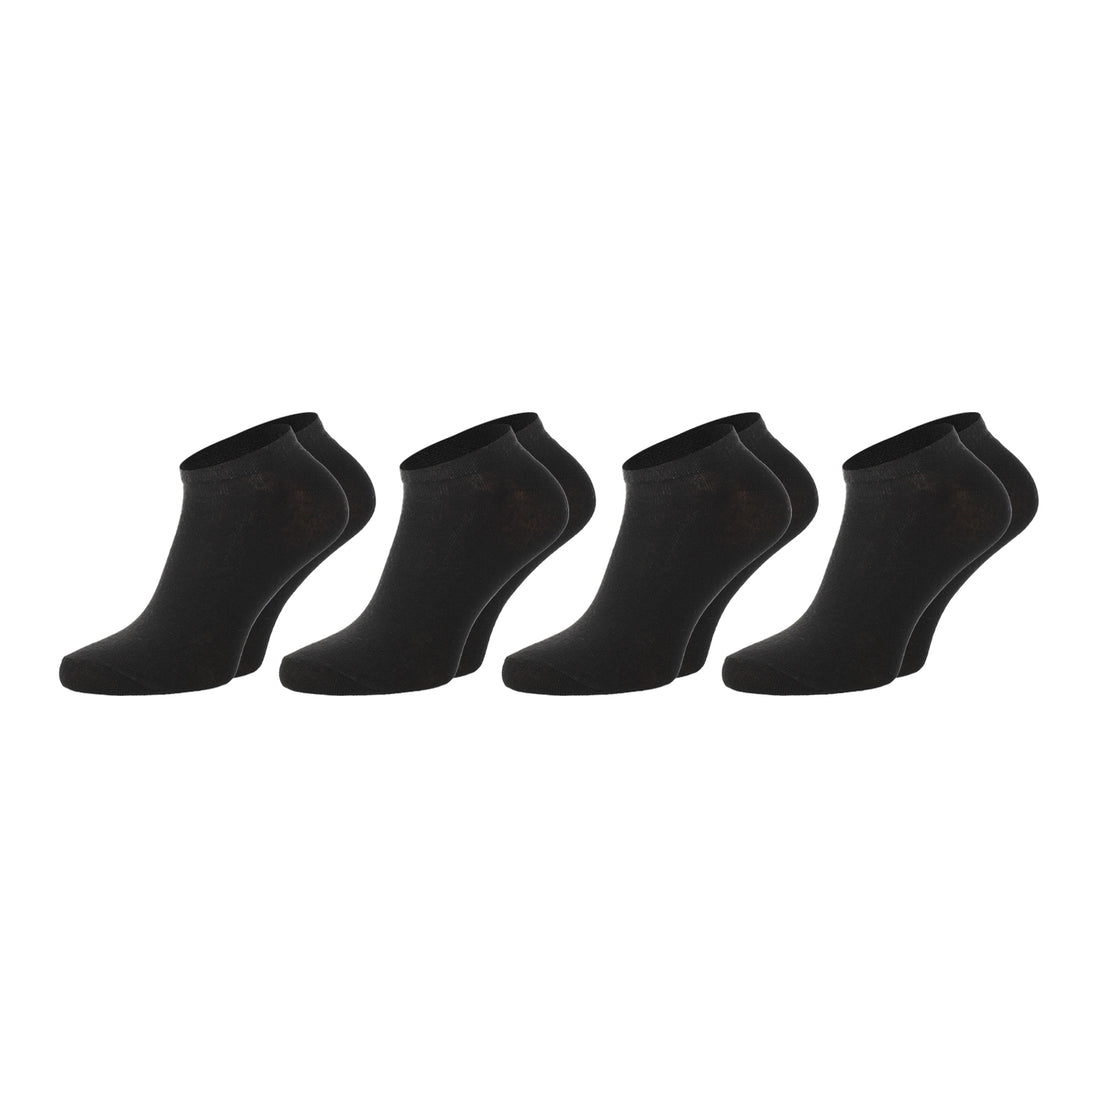 ChiliLifestyle Sneaker Schwarz, 4 Paar, für Damen und Herren, Freizeit